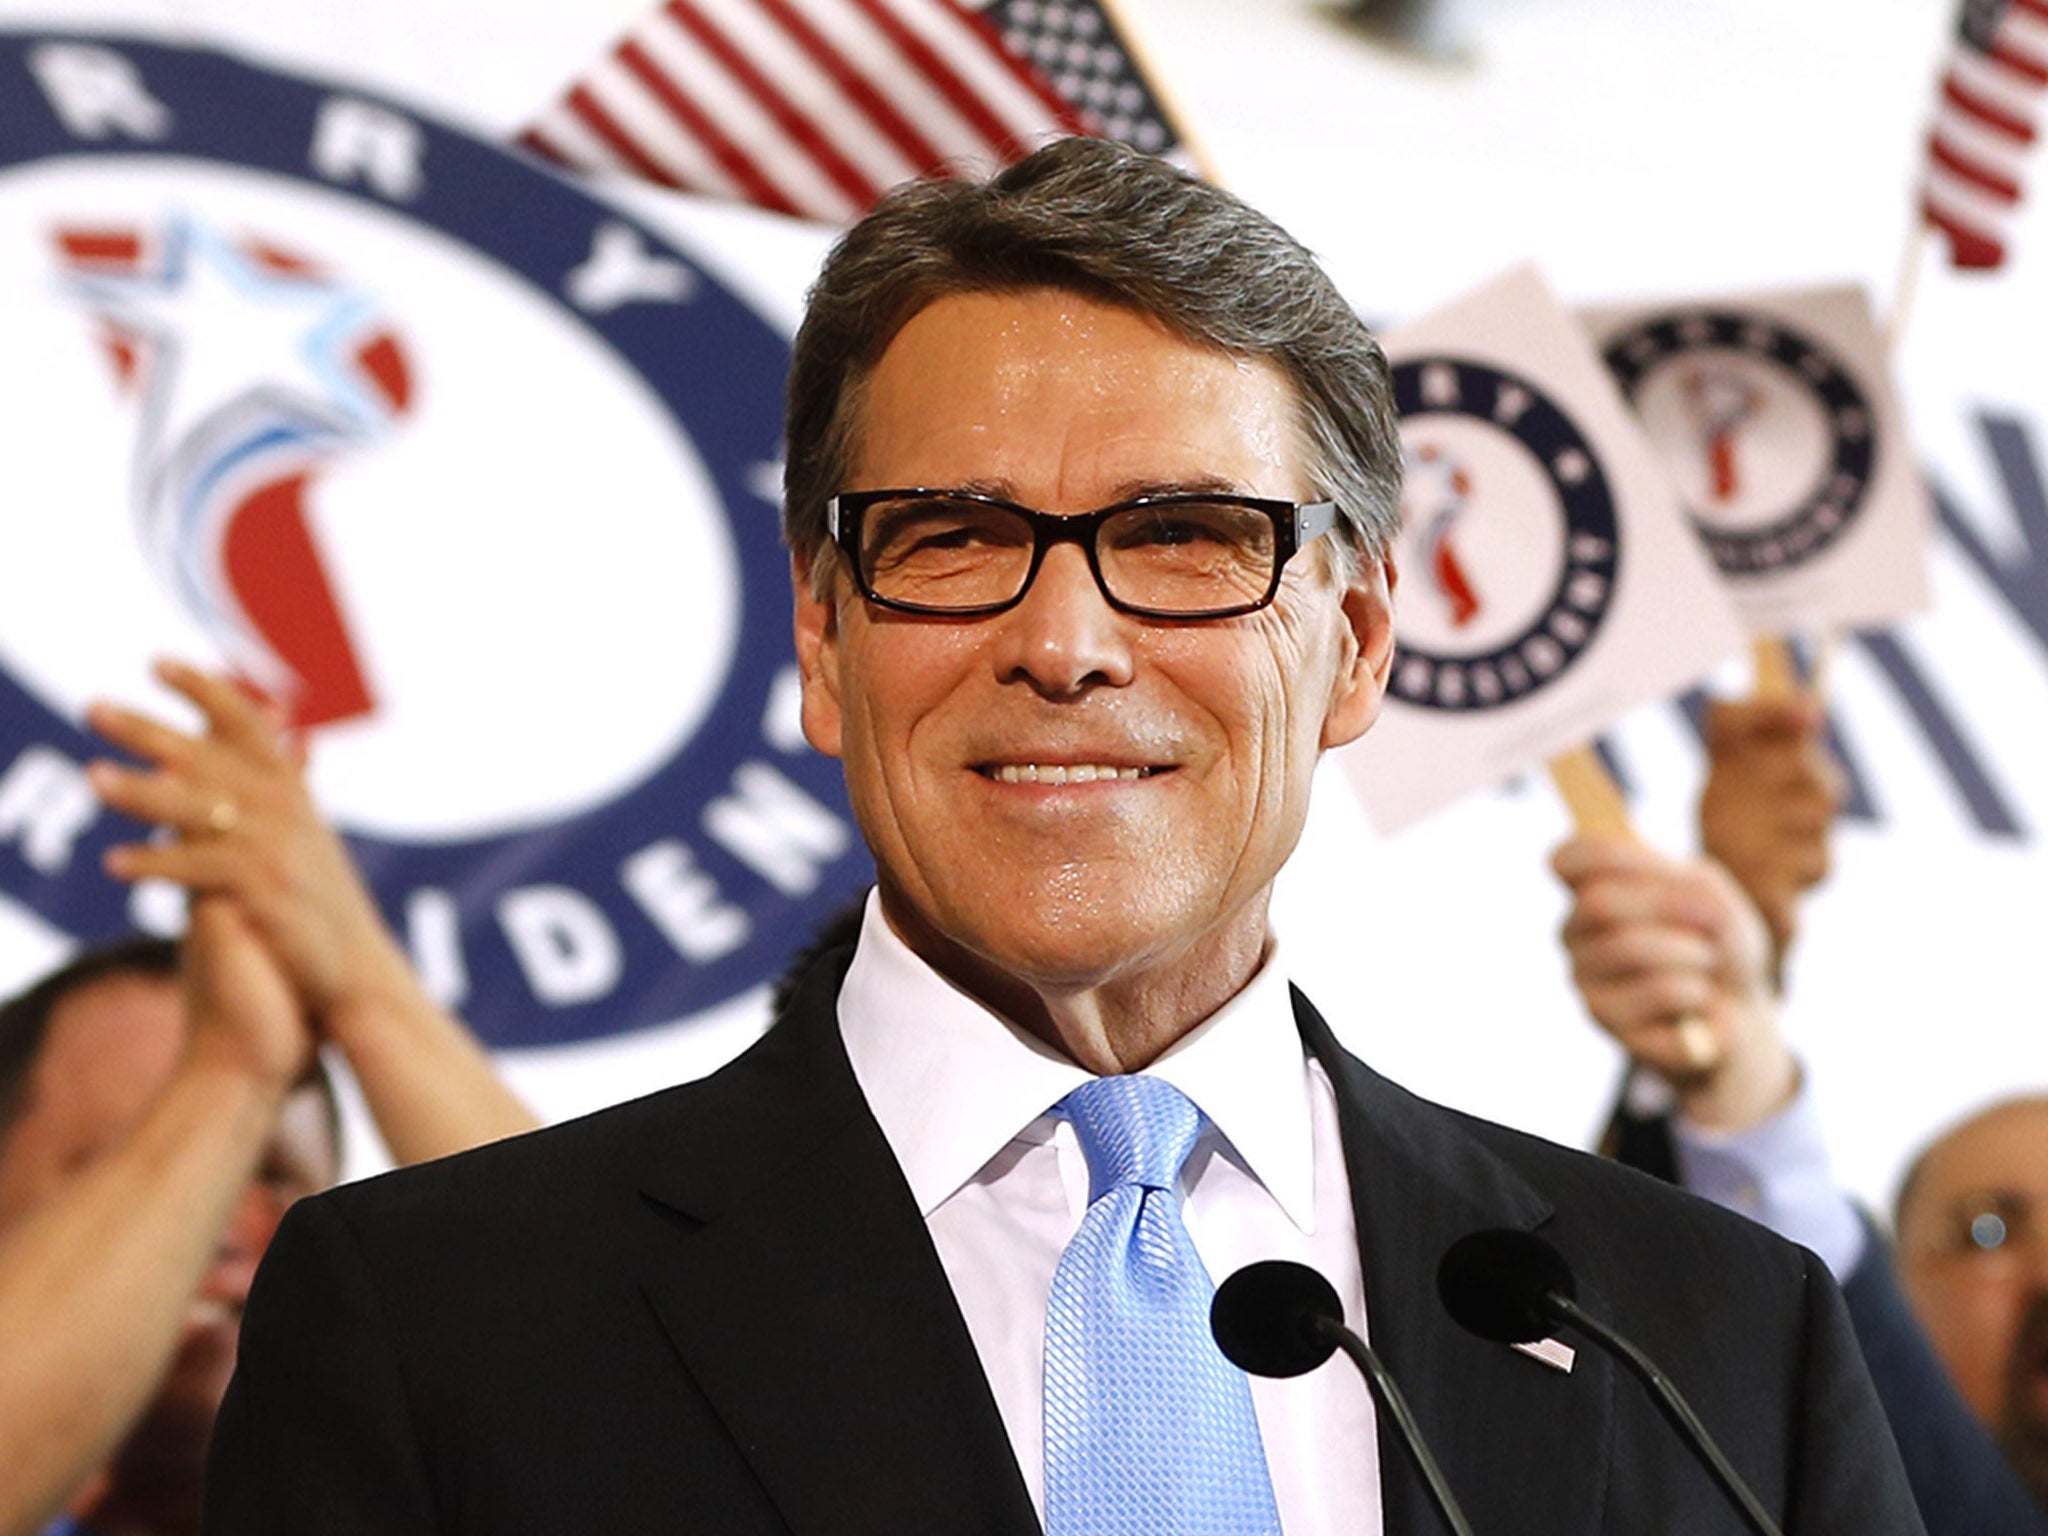 El exgobernador de Texas Rick Perry acuñó la frase “el milagro de Texas” para describir la fuerza económica del estado